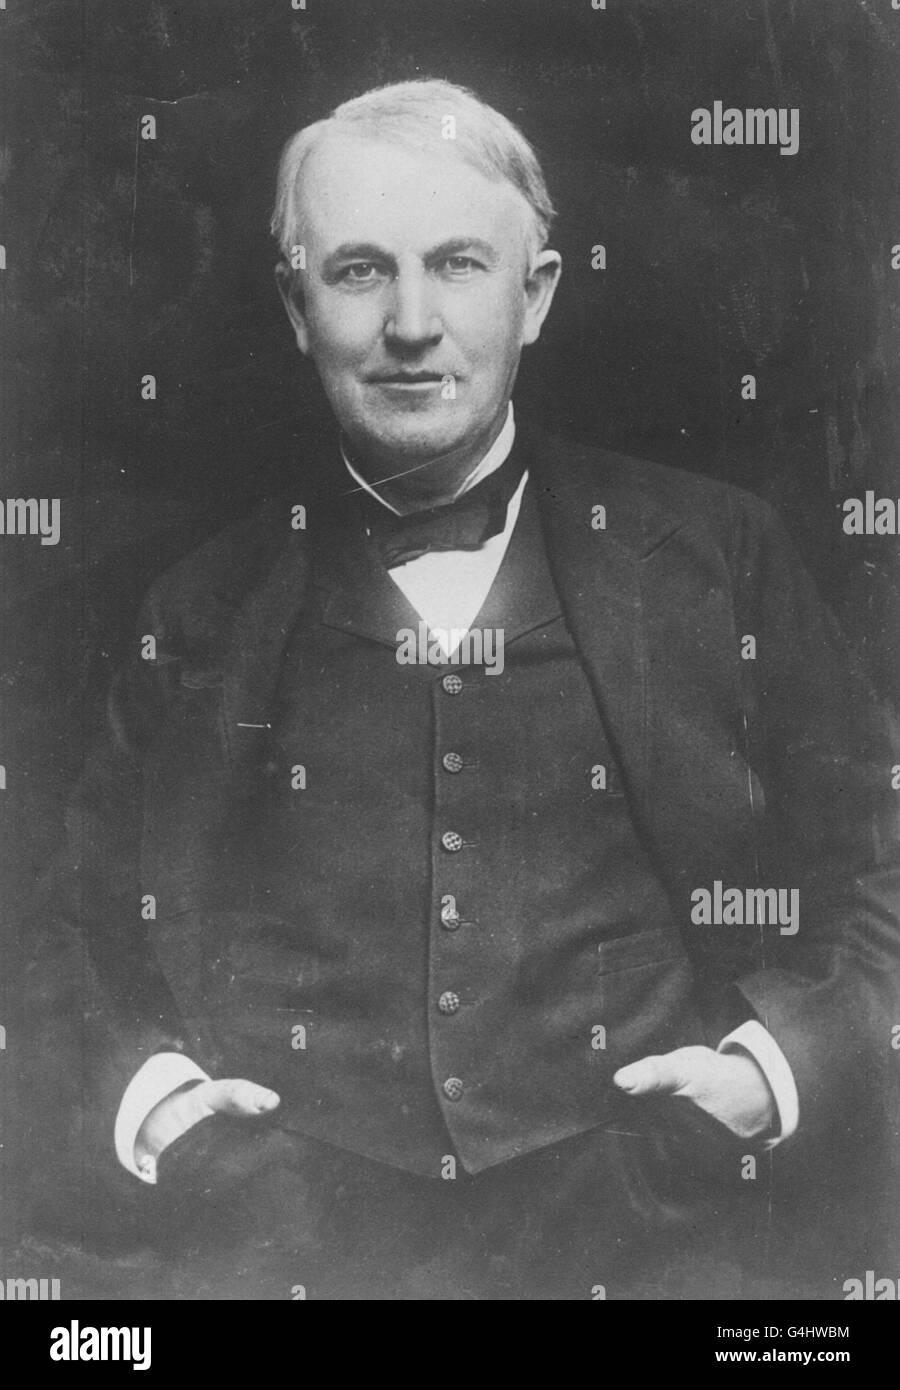 21/10/1879 - in questo giorno nella storia - dopo 14 mesi di test, Thomas A. Edison ha dimostrato per la prima volta la sua lampada elettrica, sperando di competere un giorno con la luce del gas. Potrebbe bruciare per tredici ore e mezza. 11/02/1847; nato in questo giorno, American Inventor, Thomas Alva Edison 18 OTTOBRE: In questo giorno nel 1931 muore Thomas Edison. Thomas Edison (1847-1931) - inventore statunitense, che brevettò oltre mille invenzioni, tra cui il fonografo, la lampada elettrica ad incandescenza, il microfono e il cinetoscopio. Foto Stock